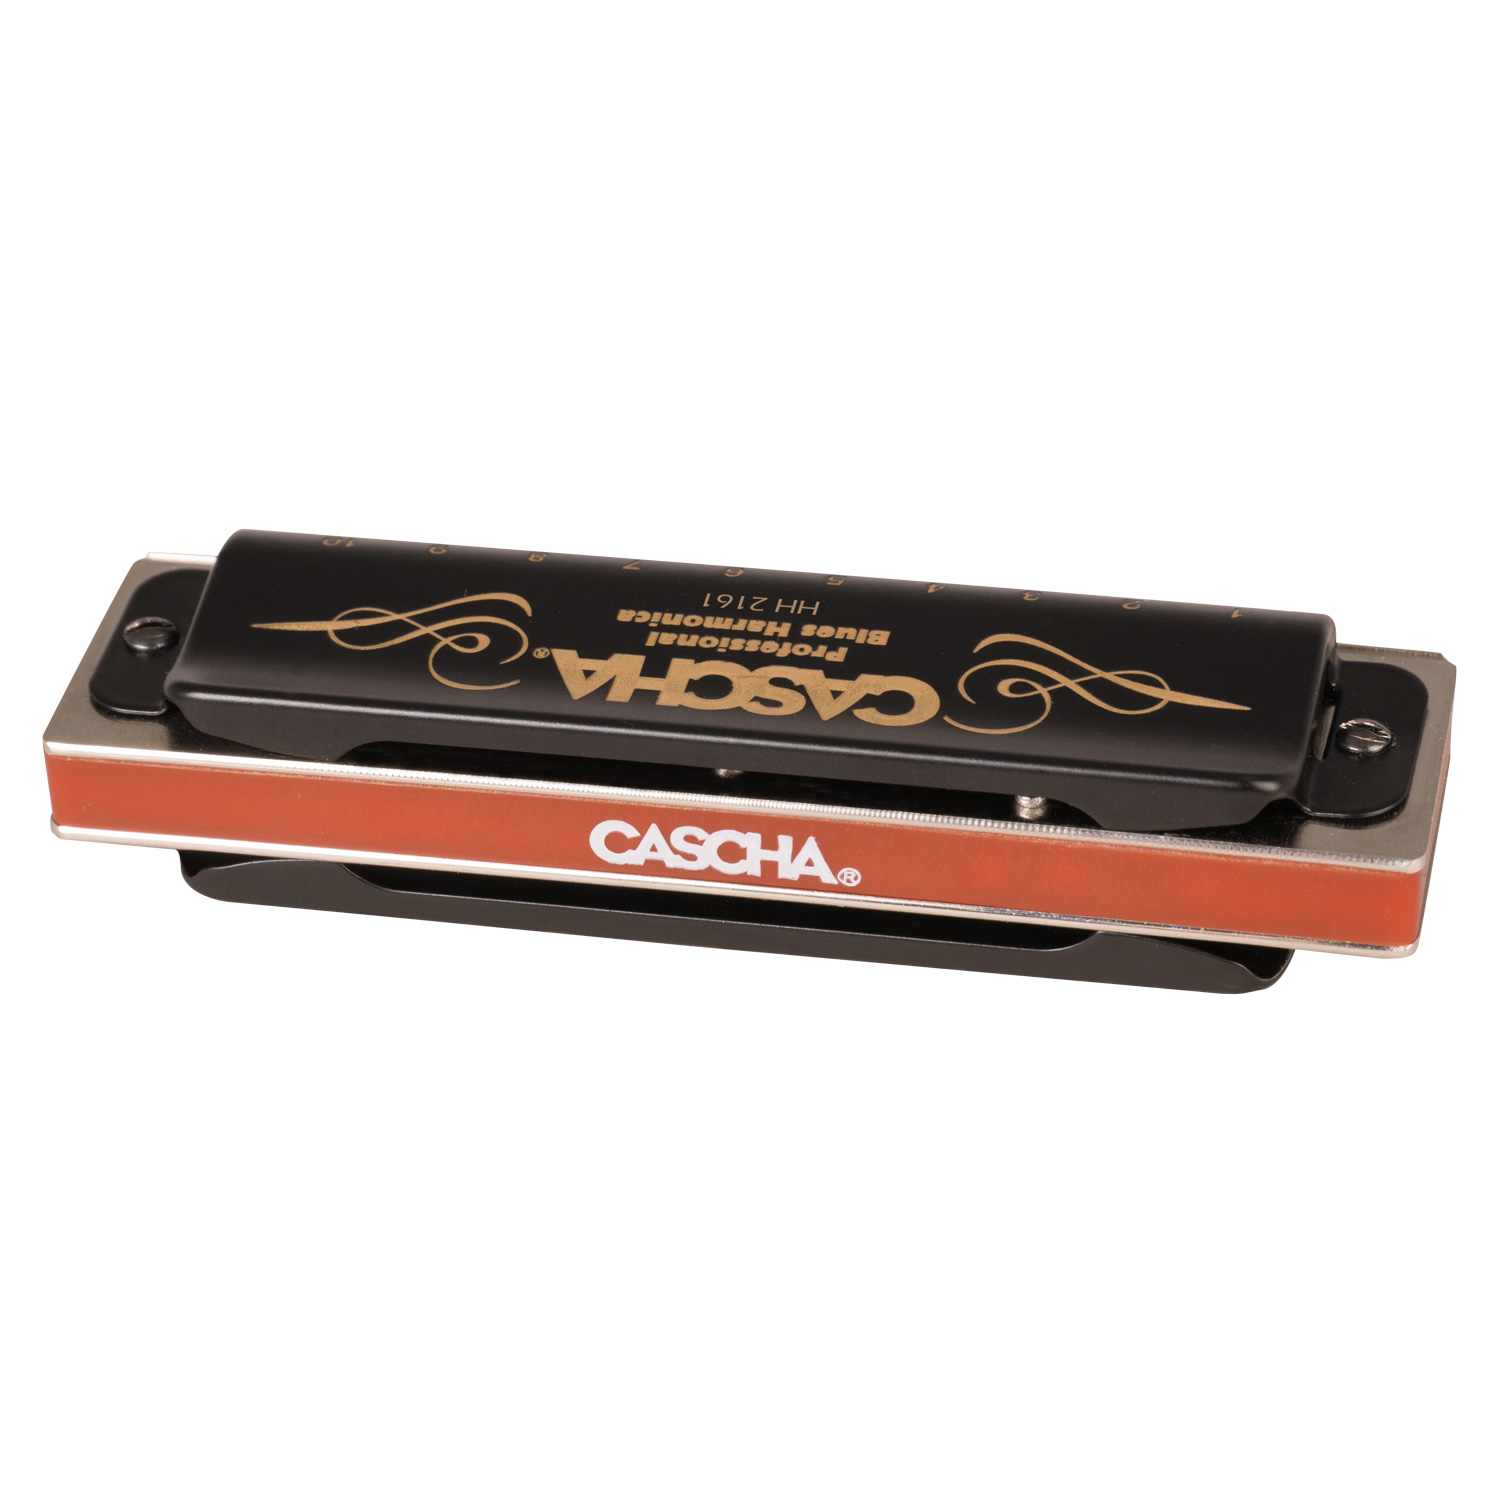 instrument de musique pour adultes et débutants avec étui CASCHA Professional harmonica en la majeur harmonica blues diatonique